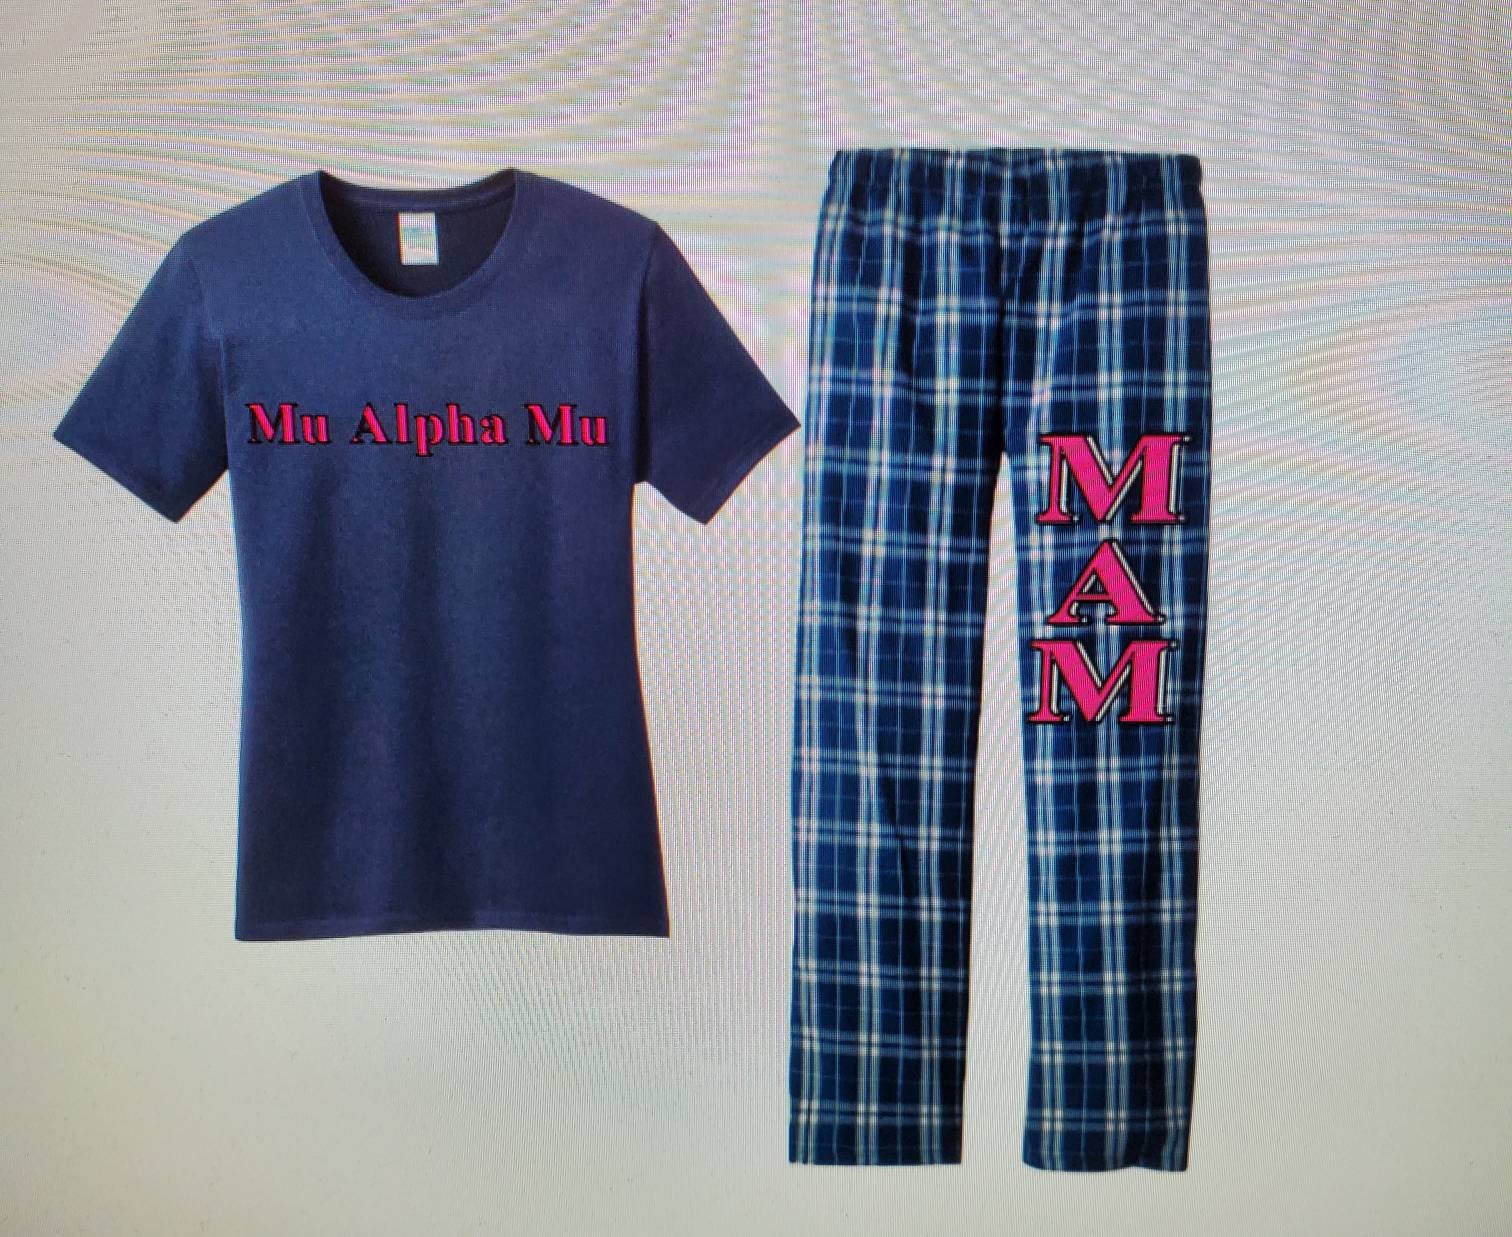 Mu Alpha Mu Pajama Set